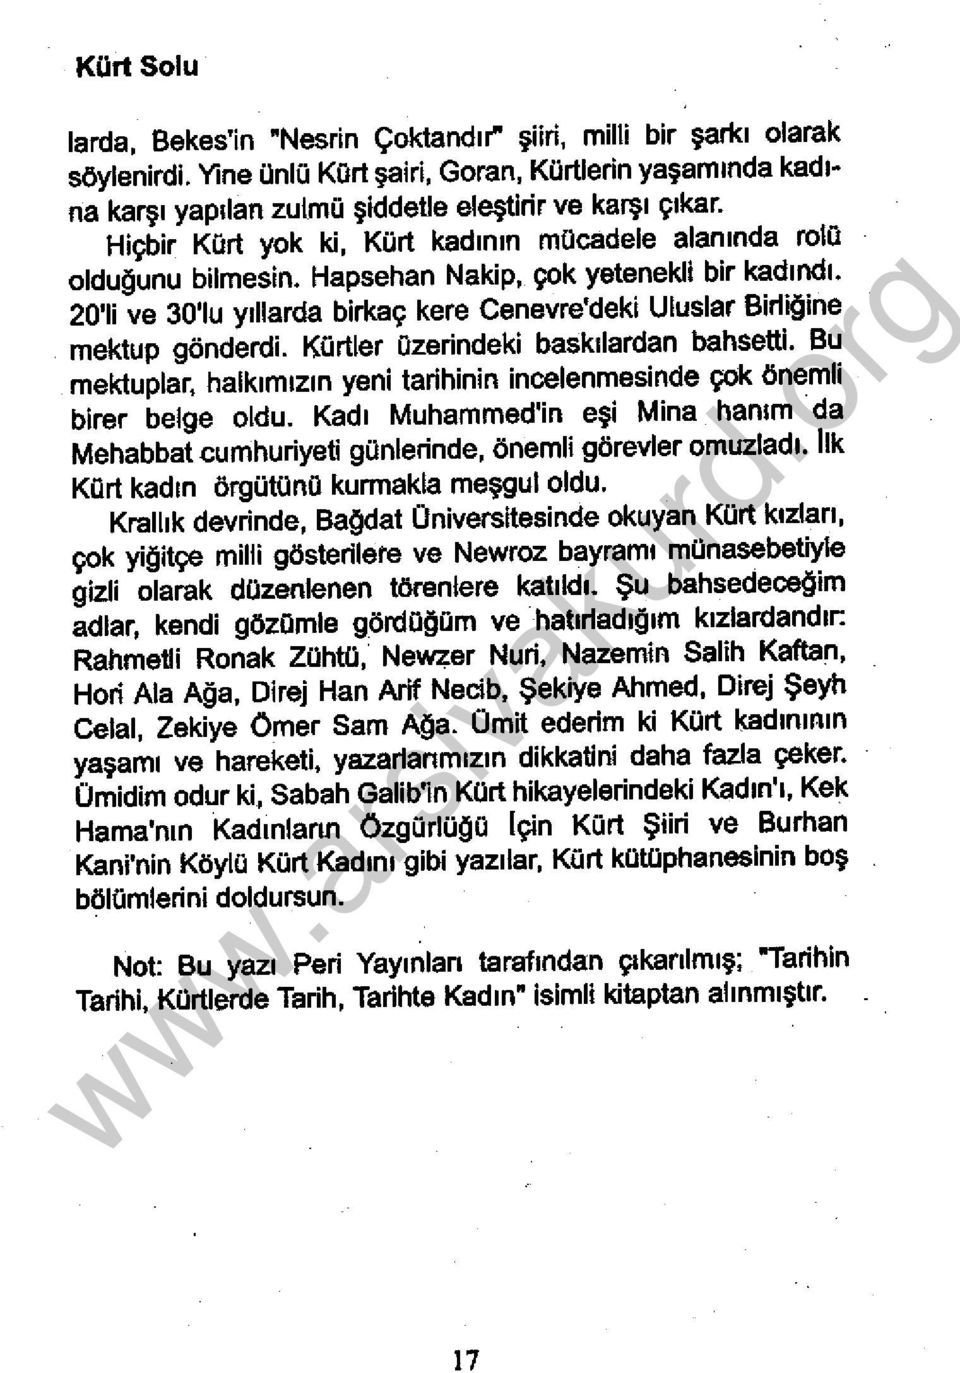 20'1i ve 30'1u yıllarda birkaç kere Cenevre'deki Uluslar Birliğine mektup gönderdi. Kürtler azerindeki baskılardan bahsetti.